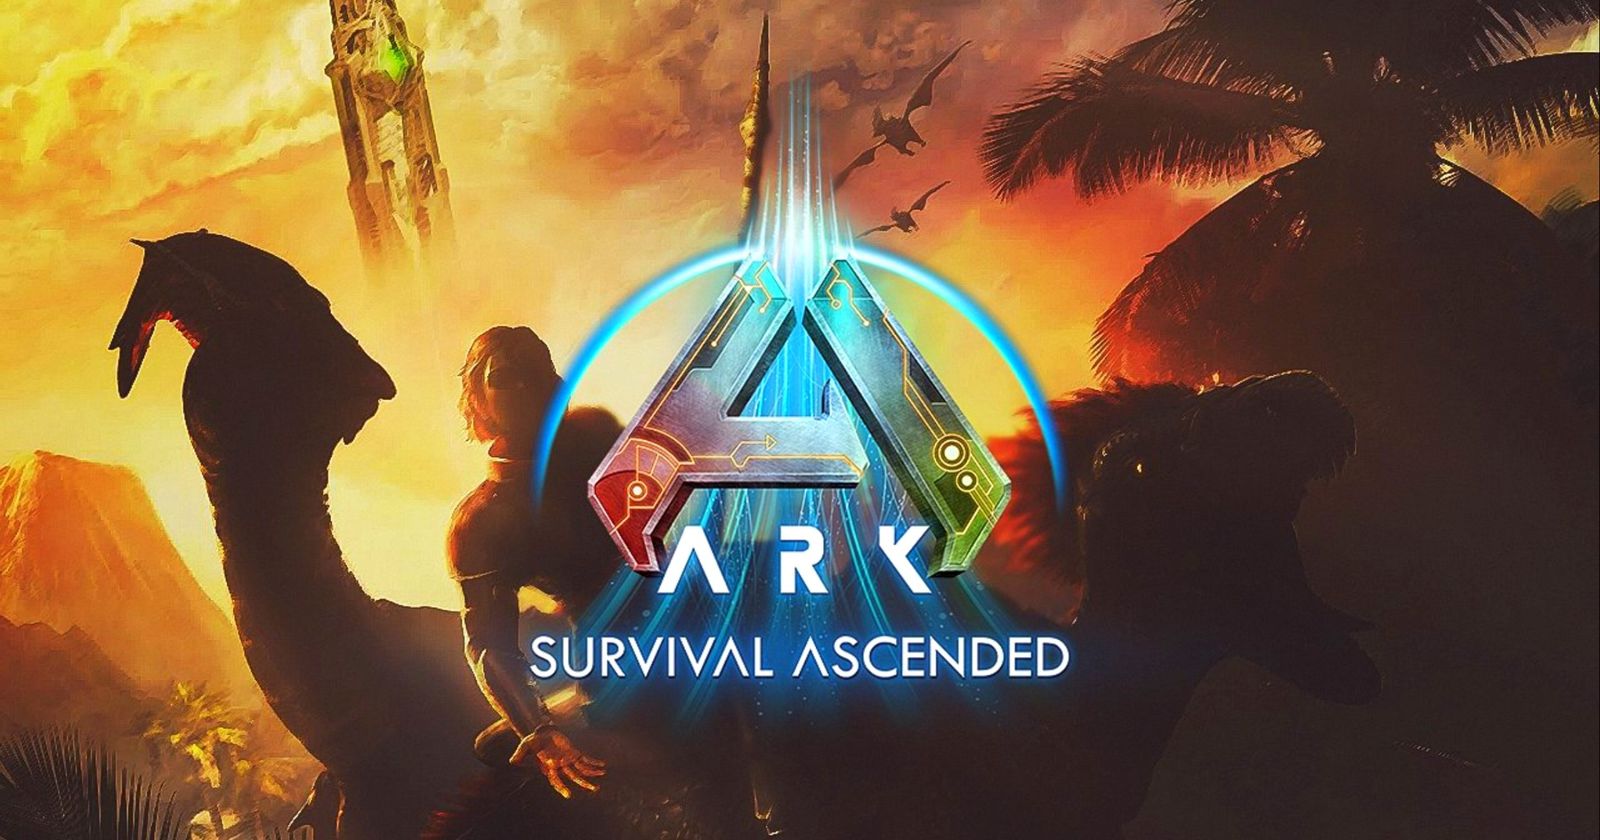 Ark II Announced Featuring Vin Diesel - Game Informer